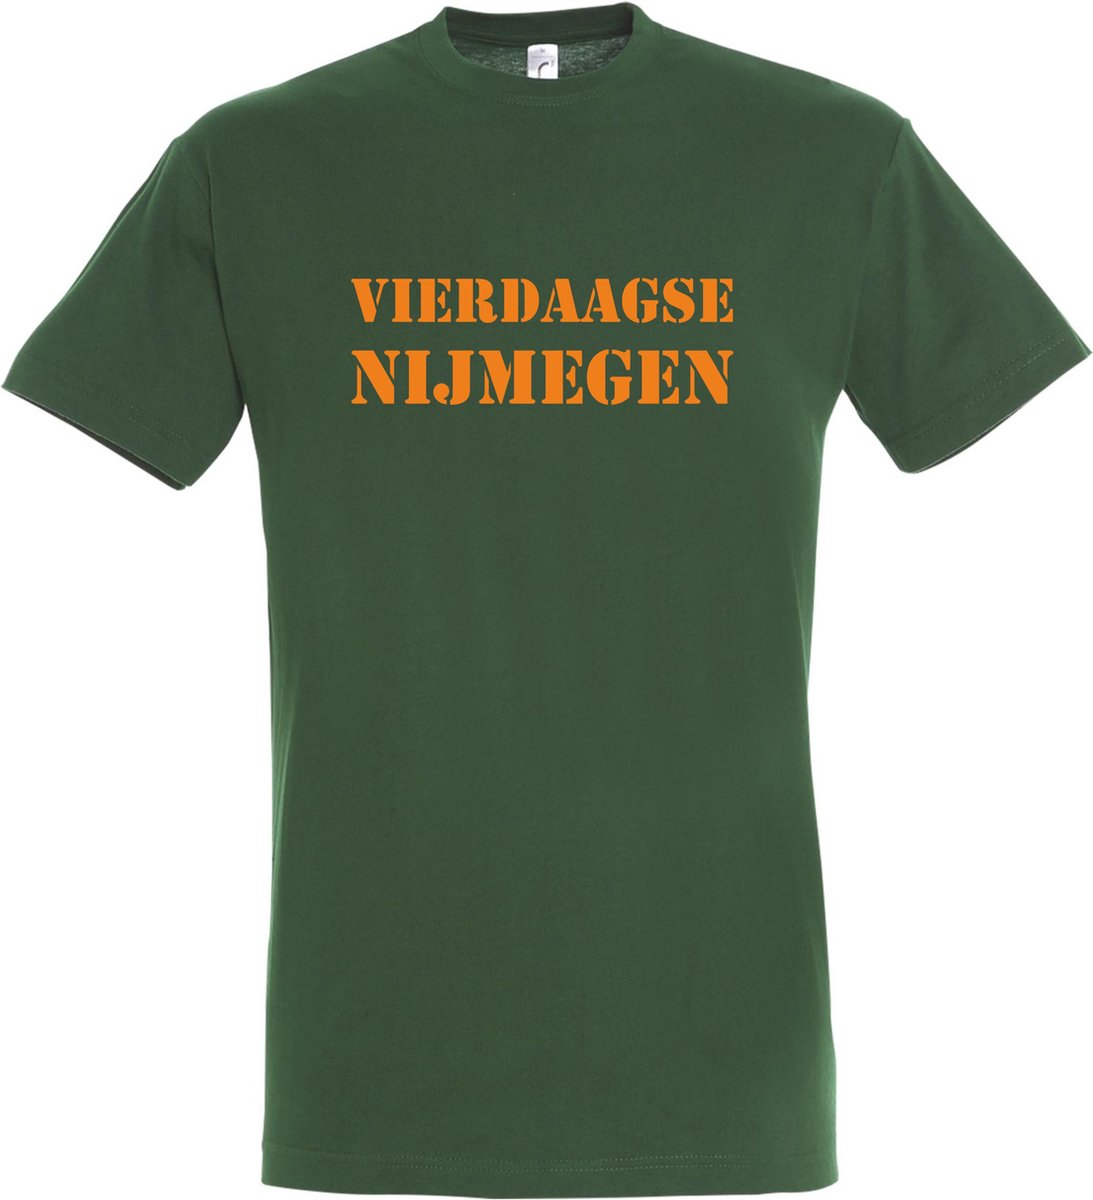 T-shirt Vierdaagse Nijmegen |Wandelvierdaagse | Vierdaagse Nijmegen | Roze woensdag | Groen | maat XL